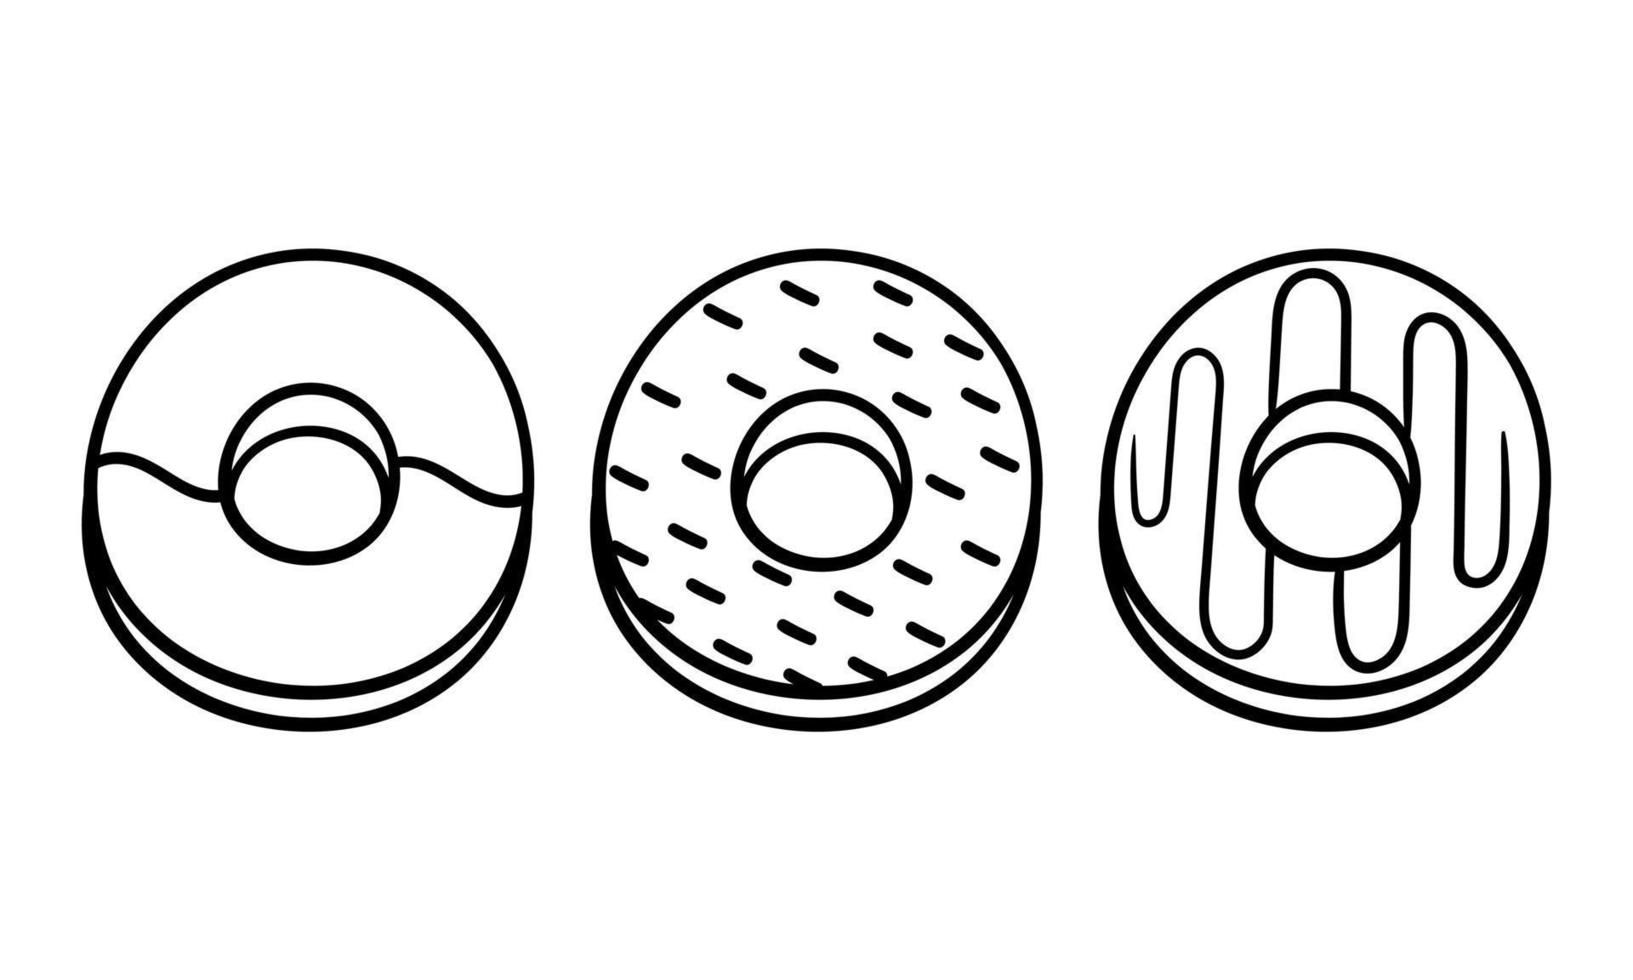 eine Sammlung von handgezeichneten Donuts vektor